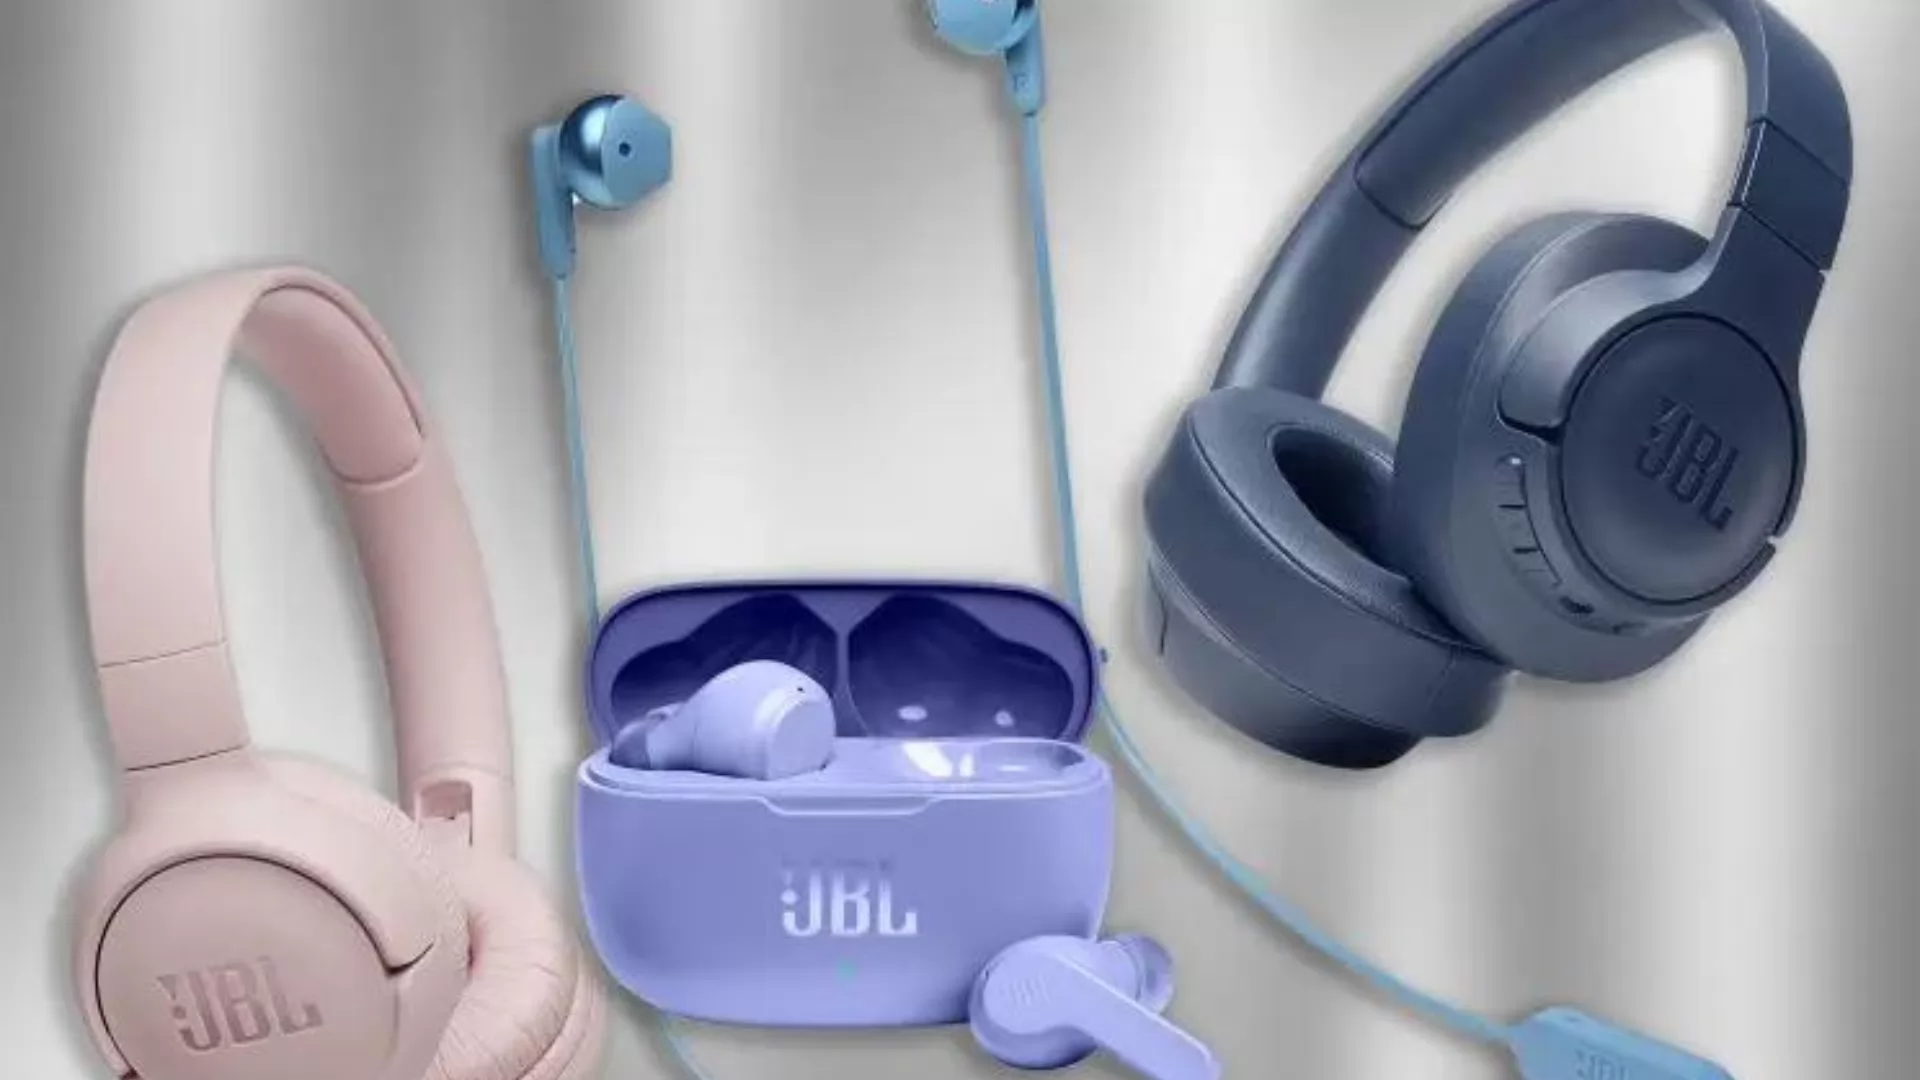 JBL earphones